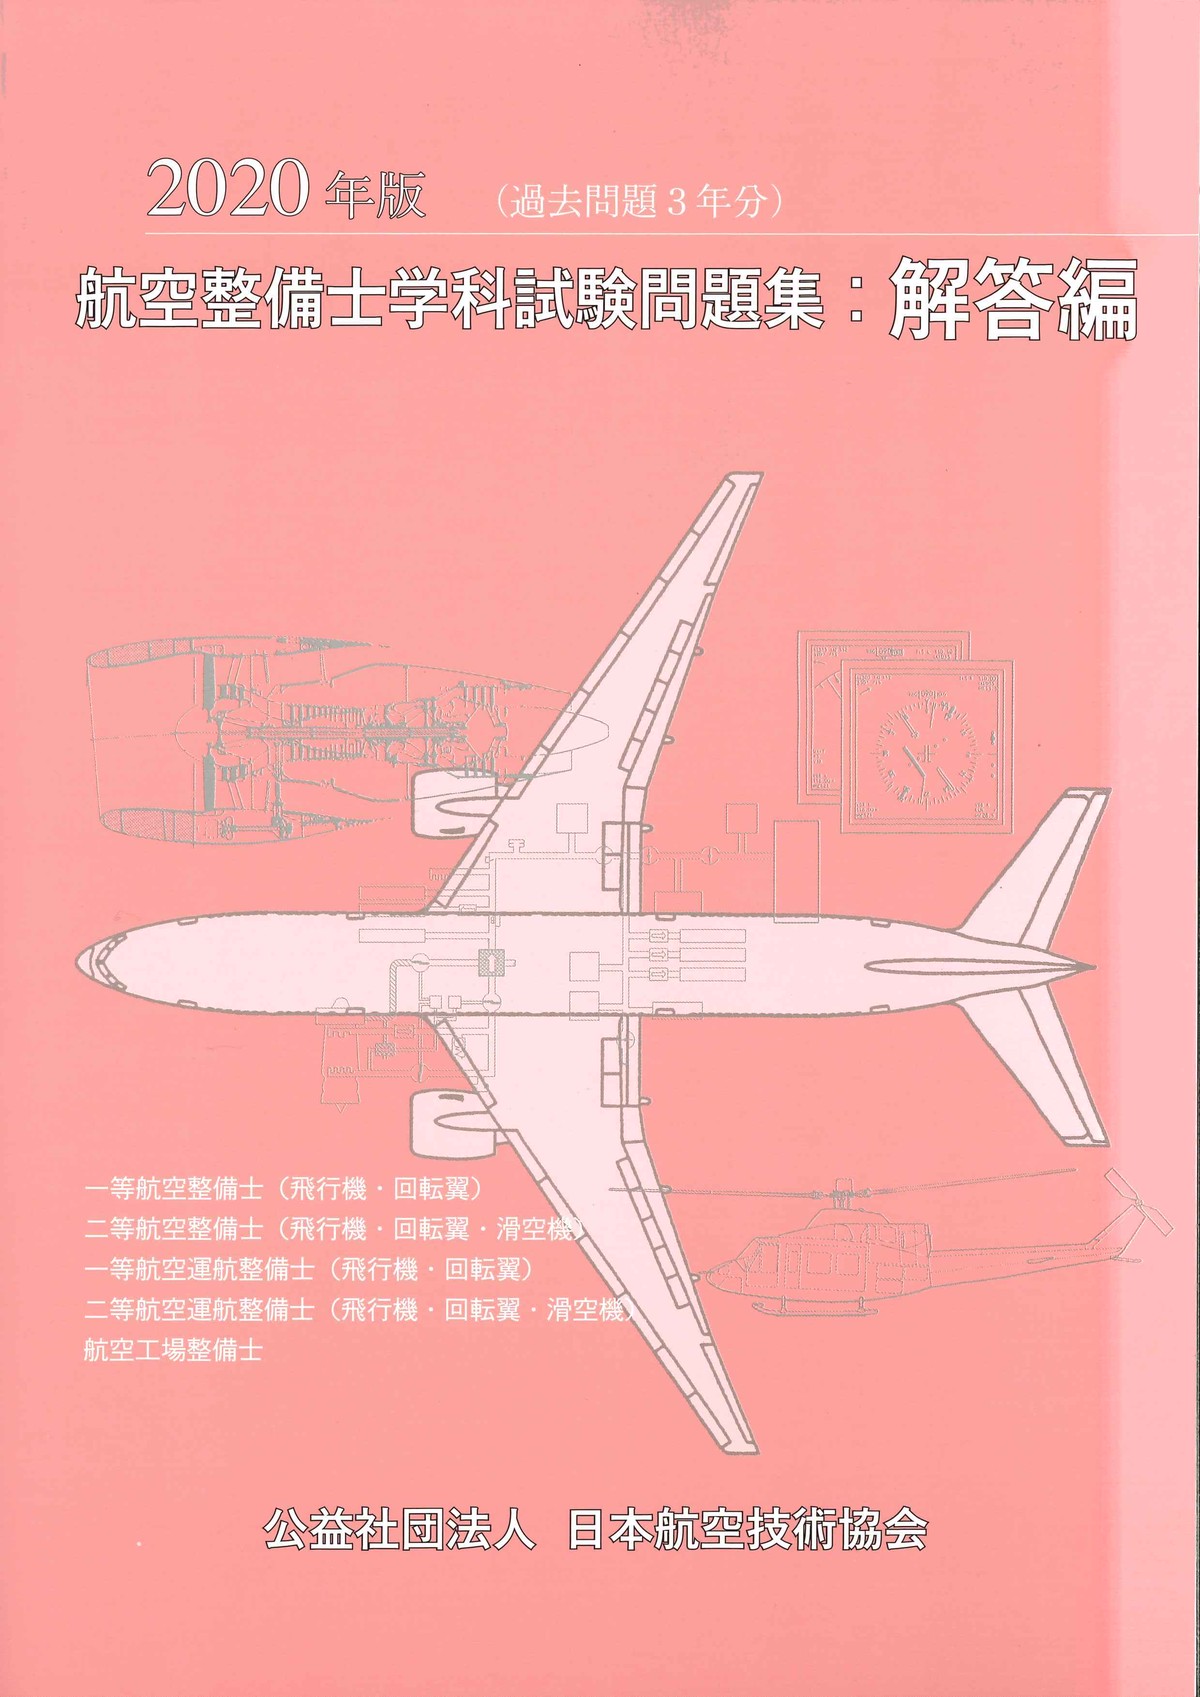 航空工学講座(青本)・航空技術協会(グリーンブック)-